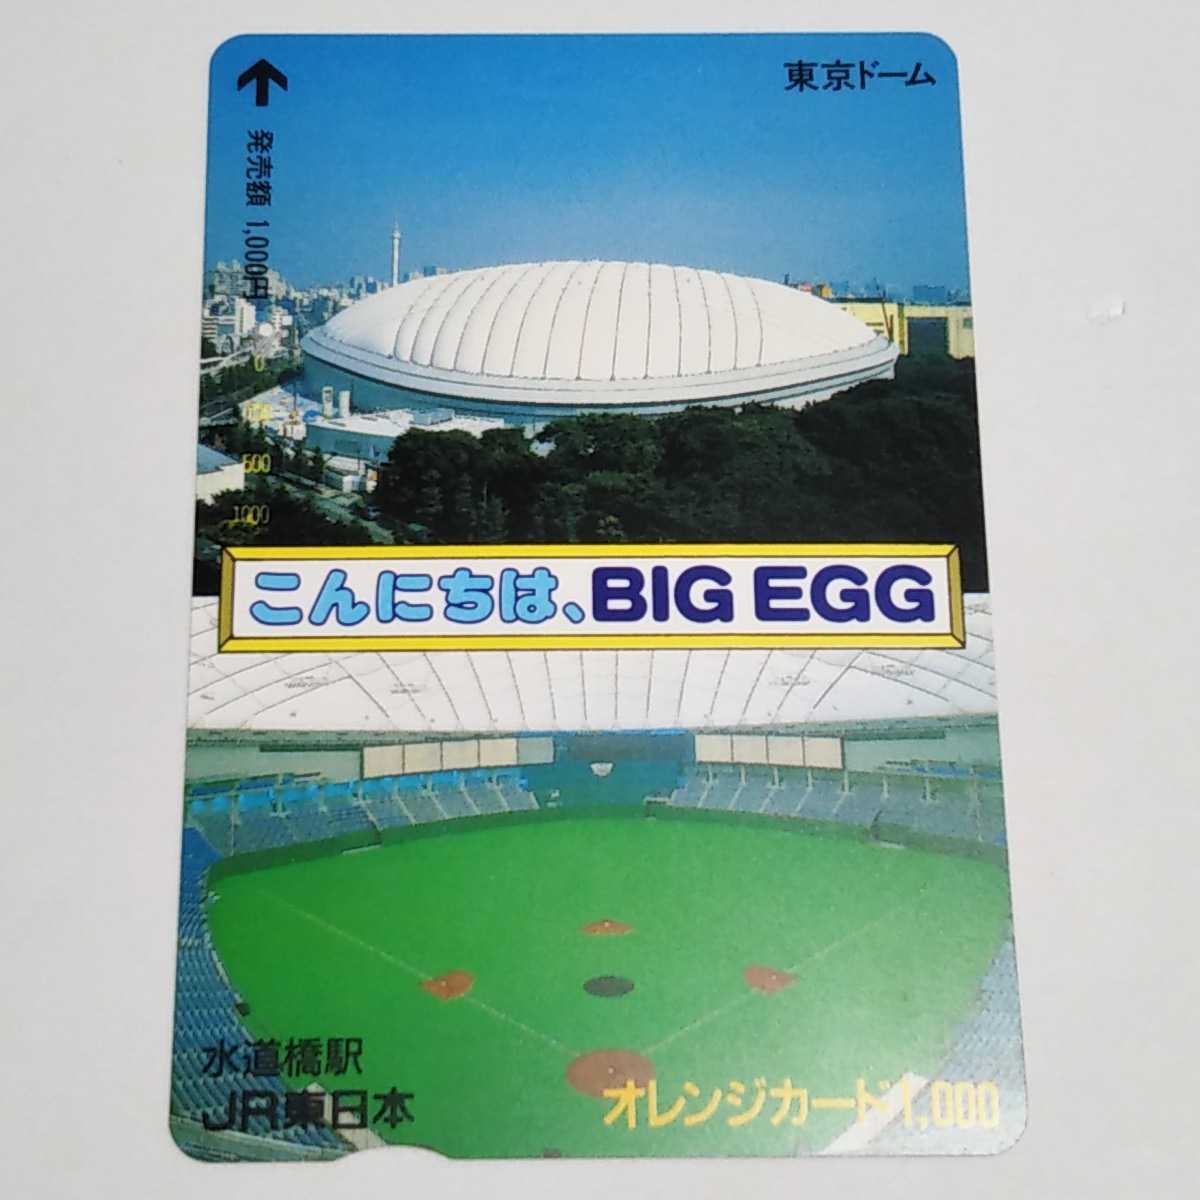 JR東日本・水道橋駅 こんにちは、BIG EGG 東京ドームオレンジカード 使用済み 1穴_画像1